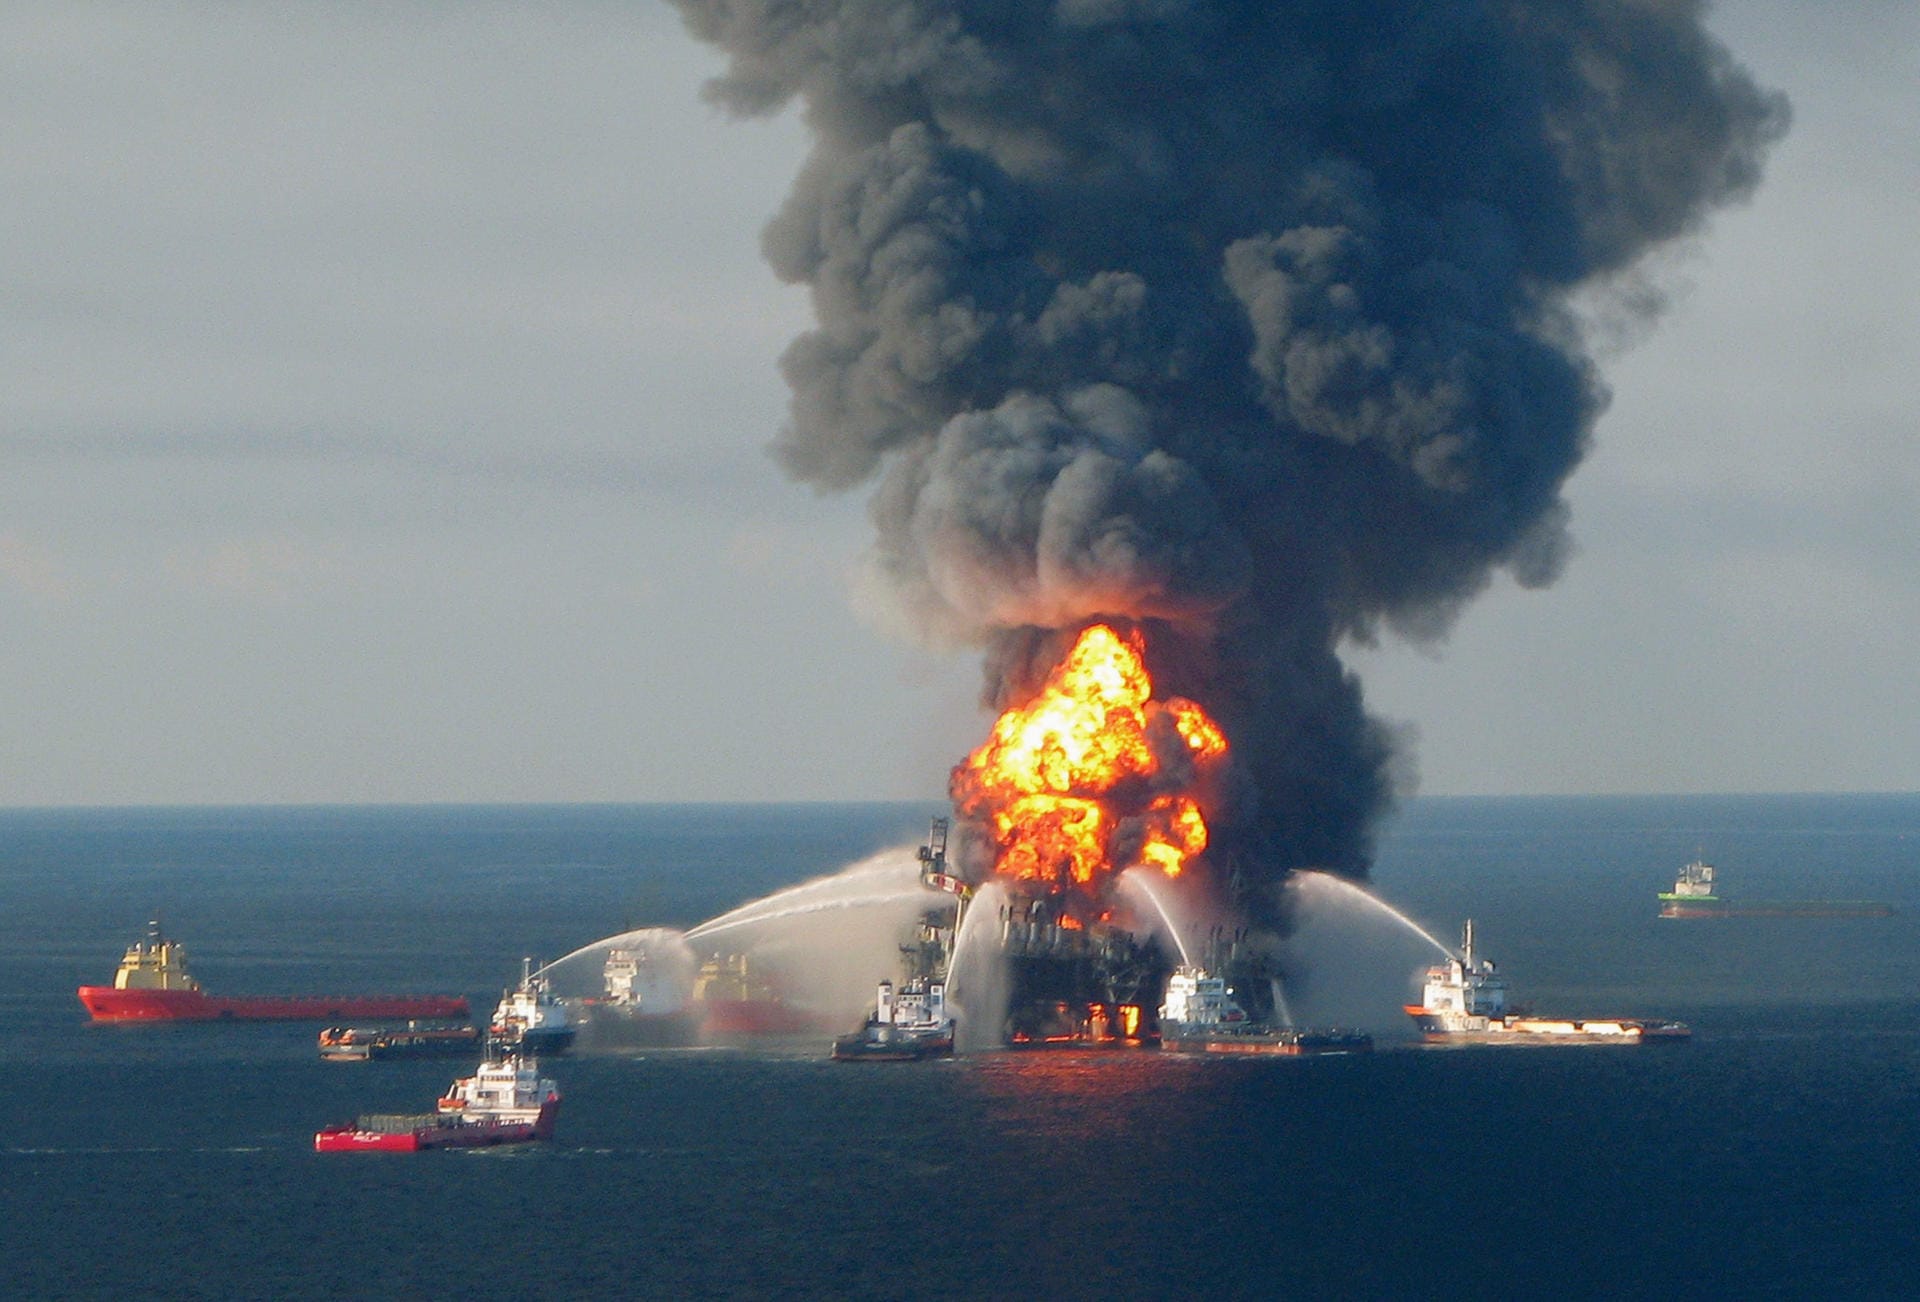 20. April 2010: Im Golf von Mexiko gerät die Ölplattform Deepwater Horizon in Brand. Zwei Tage später sinkt sie. Das Unglück löst die größte Ölkatastrophe der Geschichte aus.